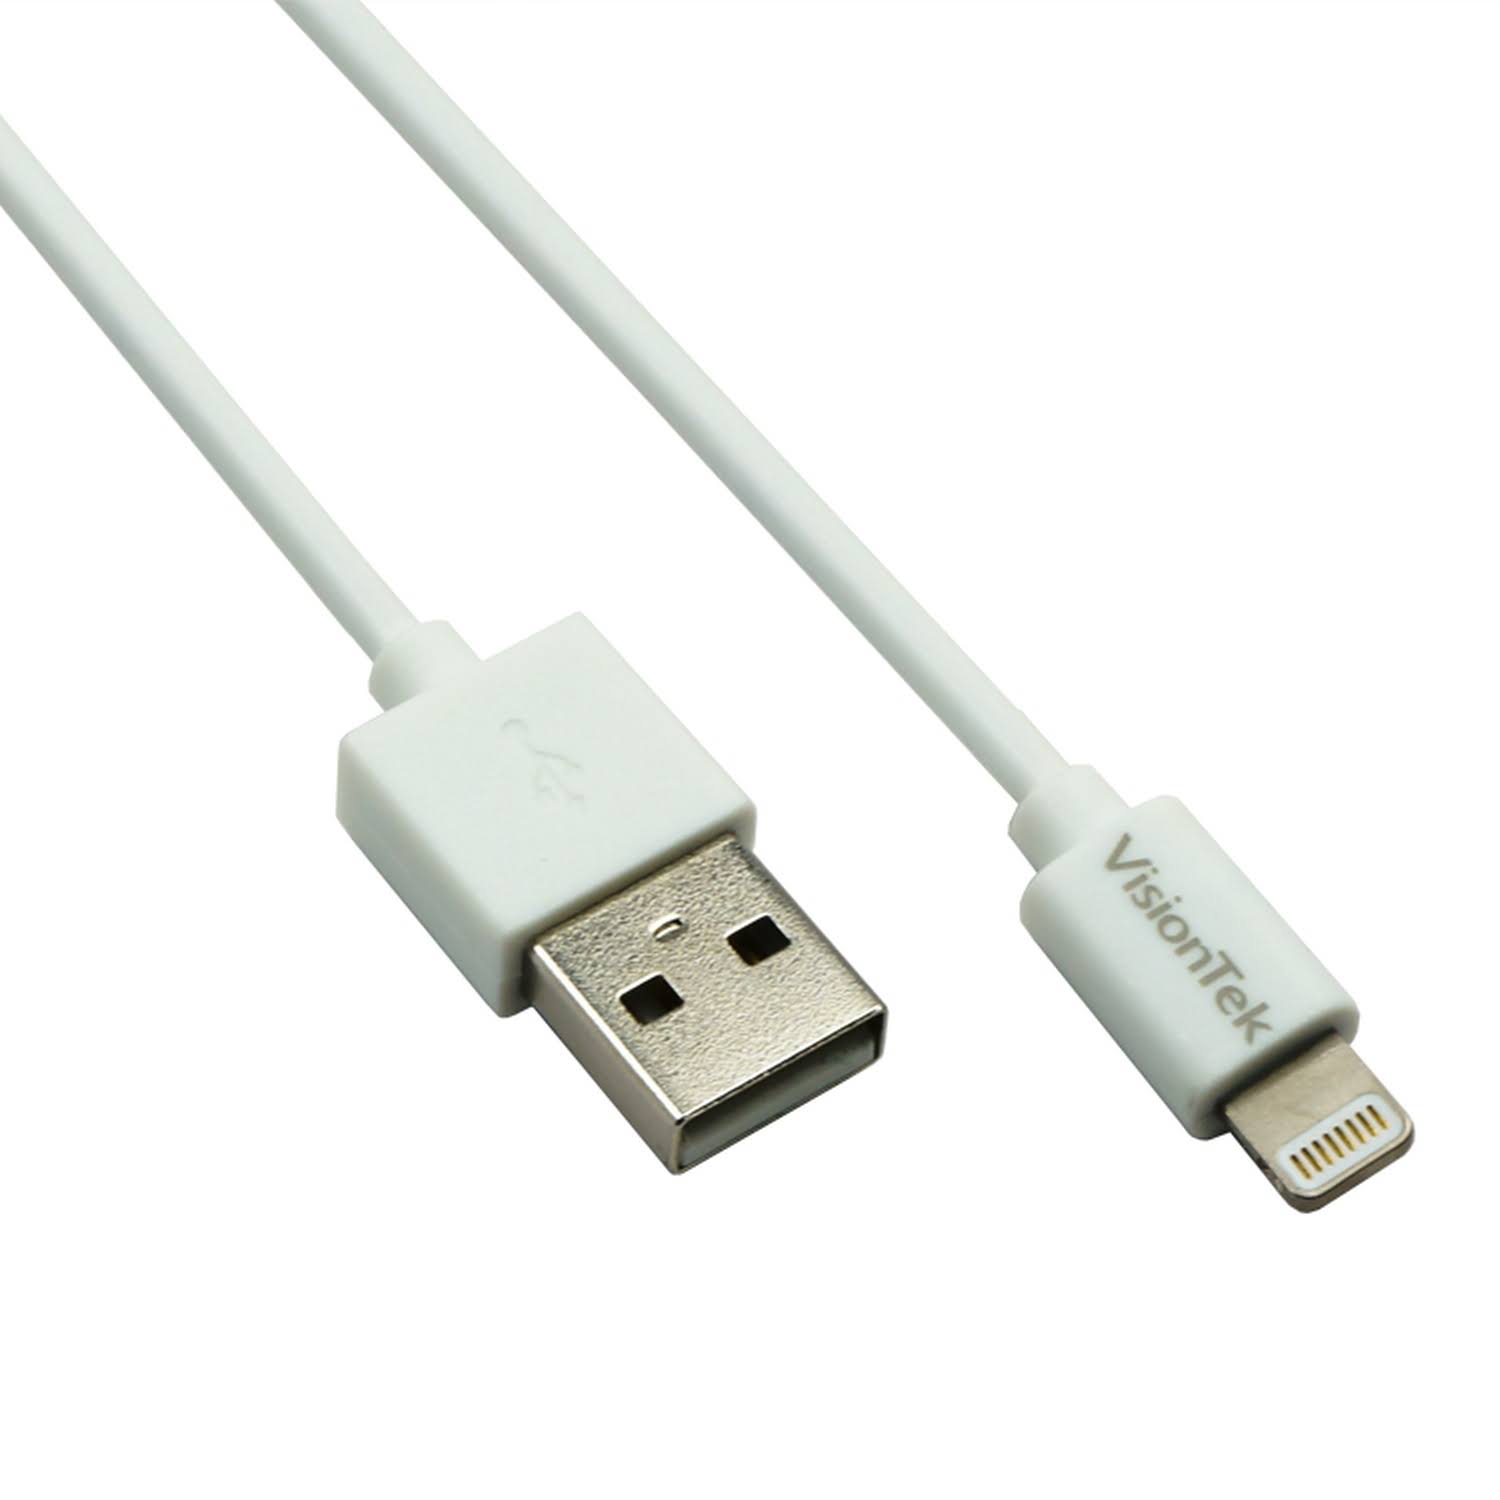 VisionTek Lightning to USB Cable - White, 1M